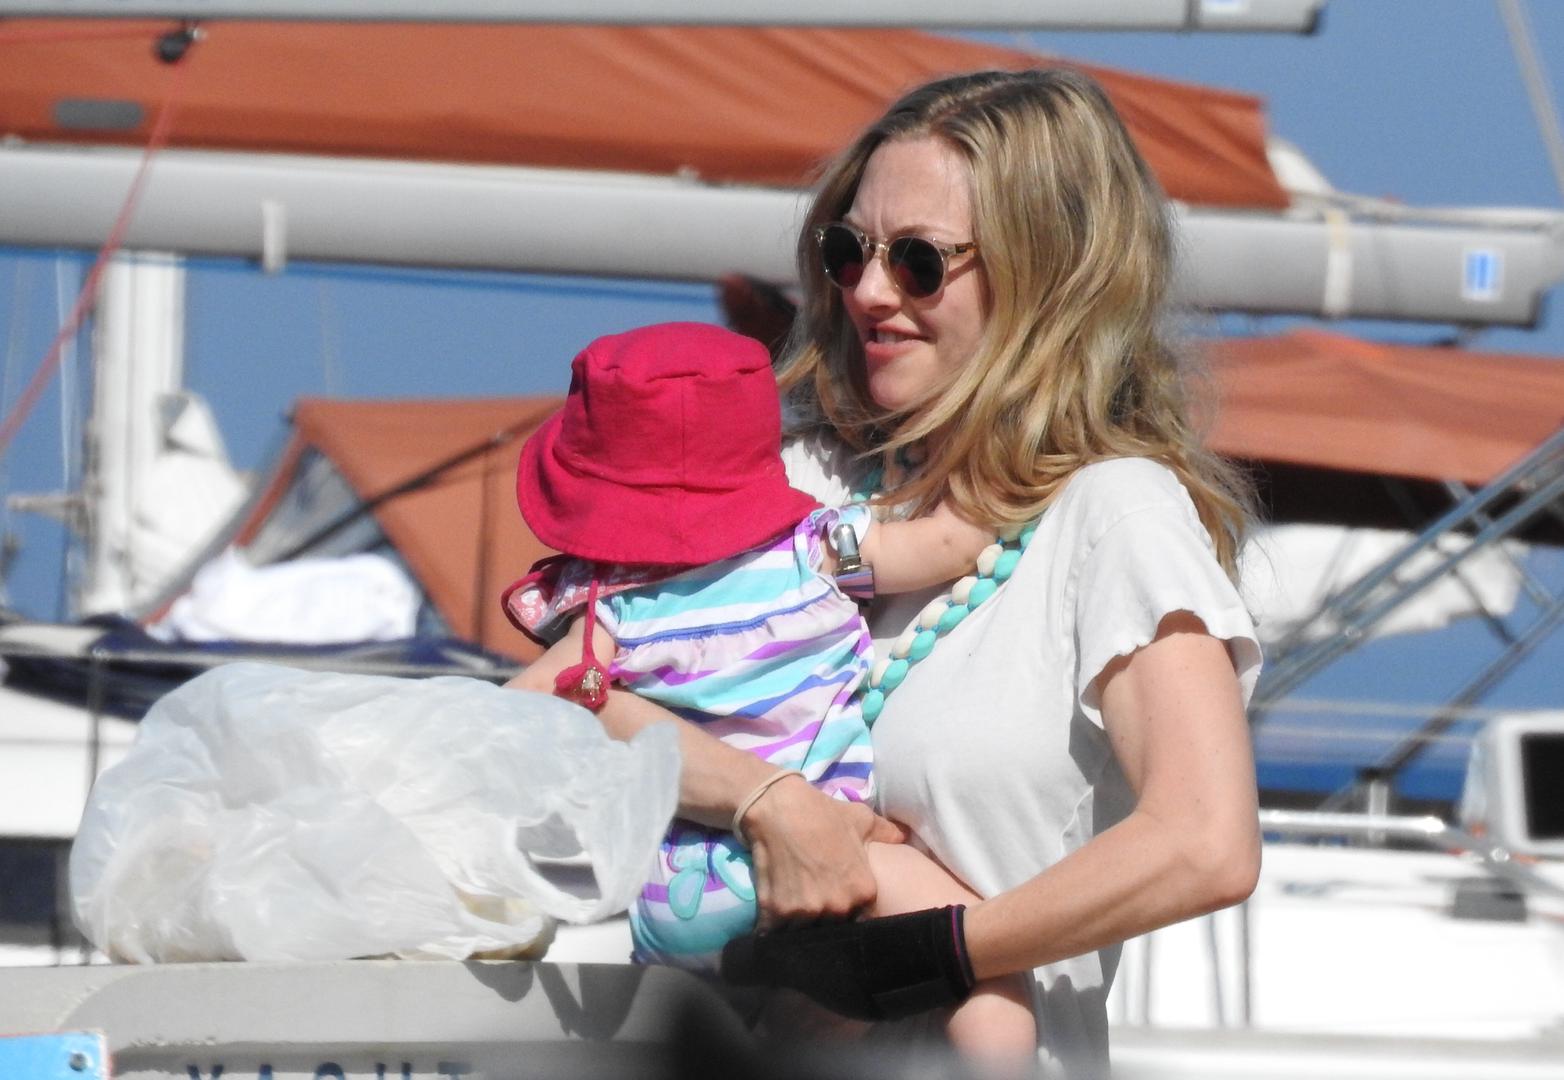 Poznata hollywoodska glumica Amanda Seyfried pauzu tijekom snimanja filma "Mamma Mia!" iskoristila je za druženje s kćeri.